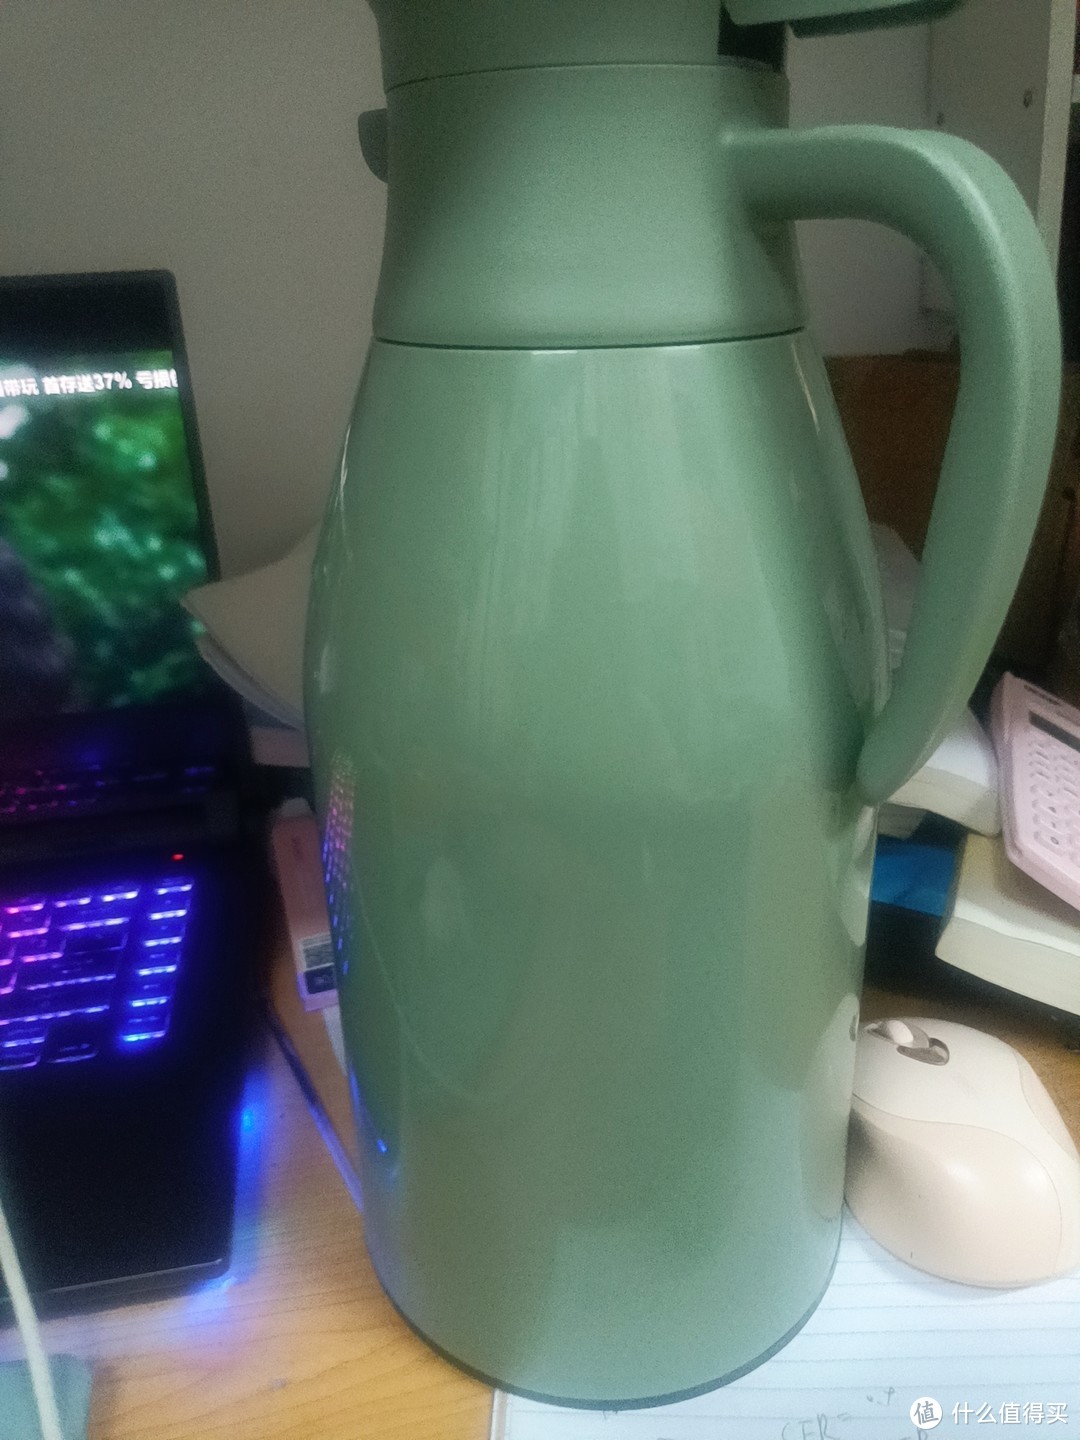 这个热水瓶颜色真的非常好看！